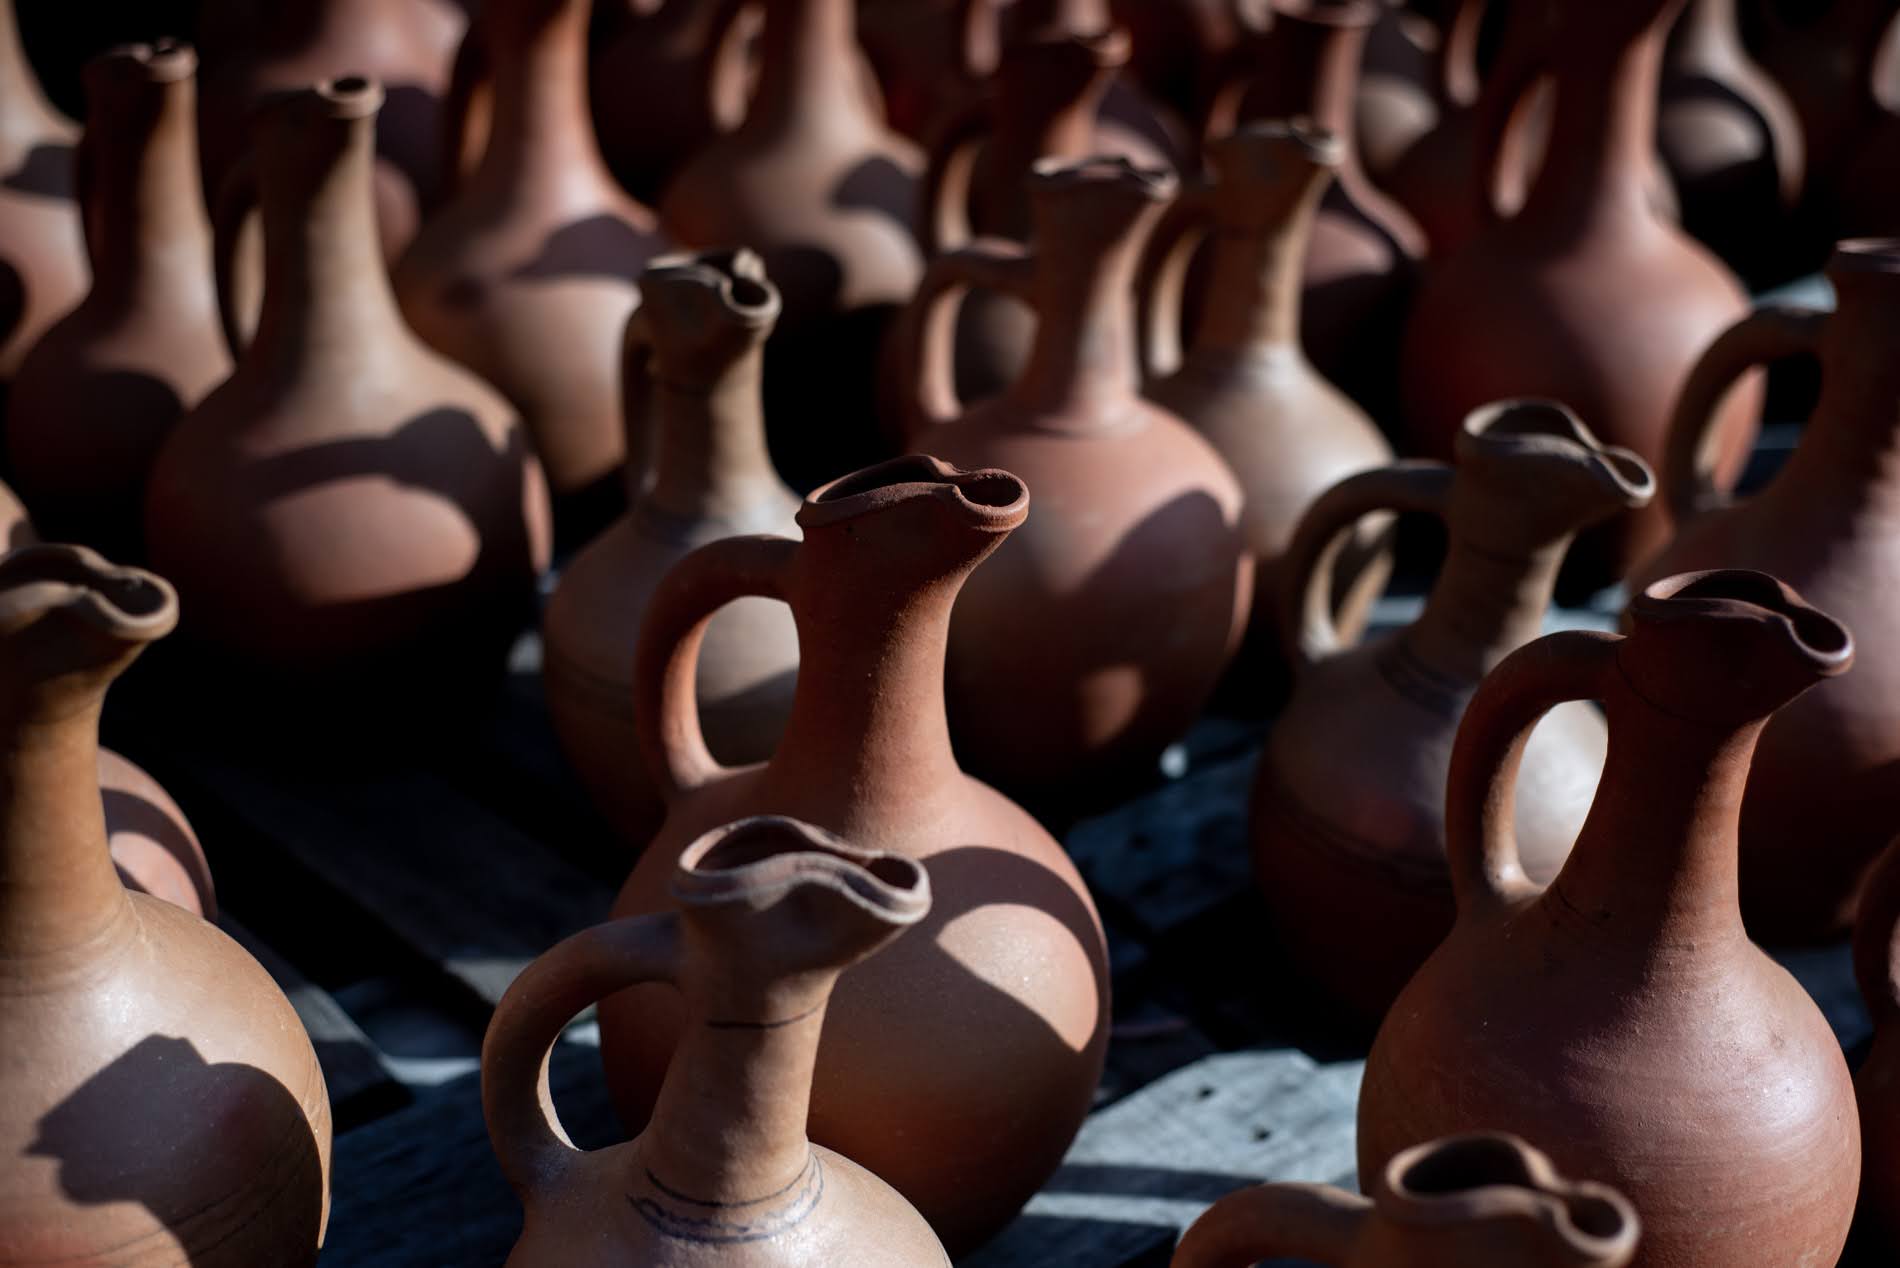 Shrosha è storicamente nota per le sue ceramiche (Tamuna Chkareuli / OC Media)